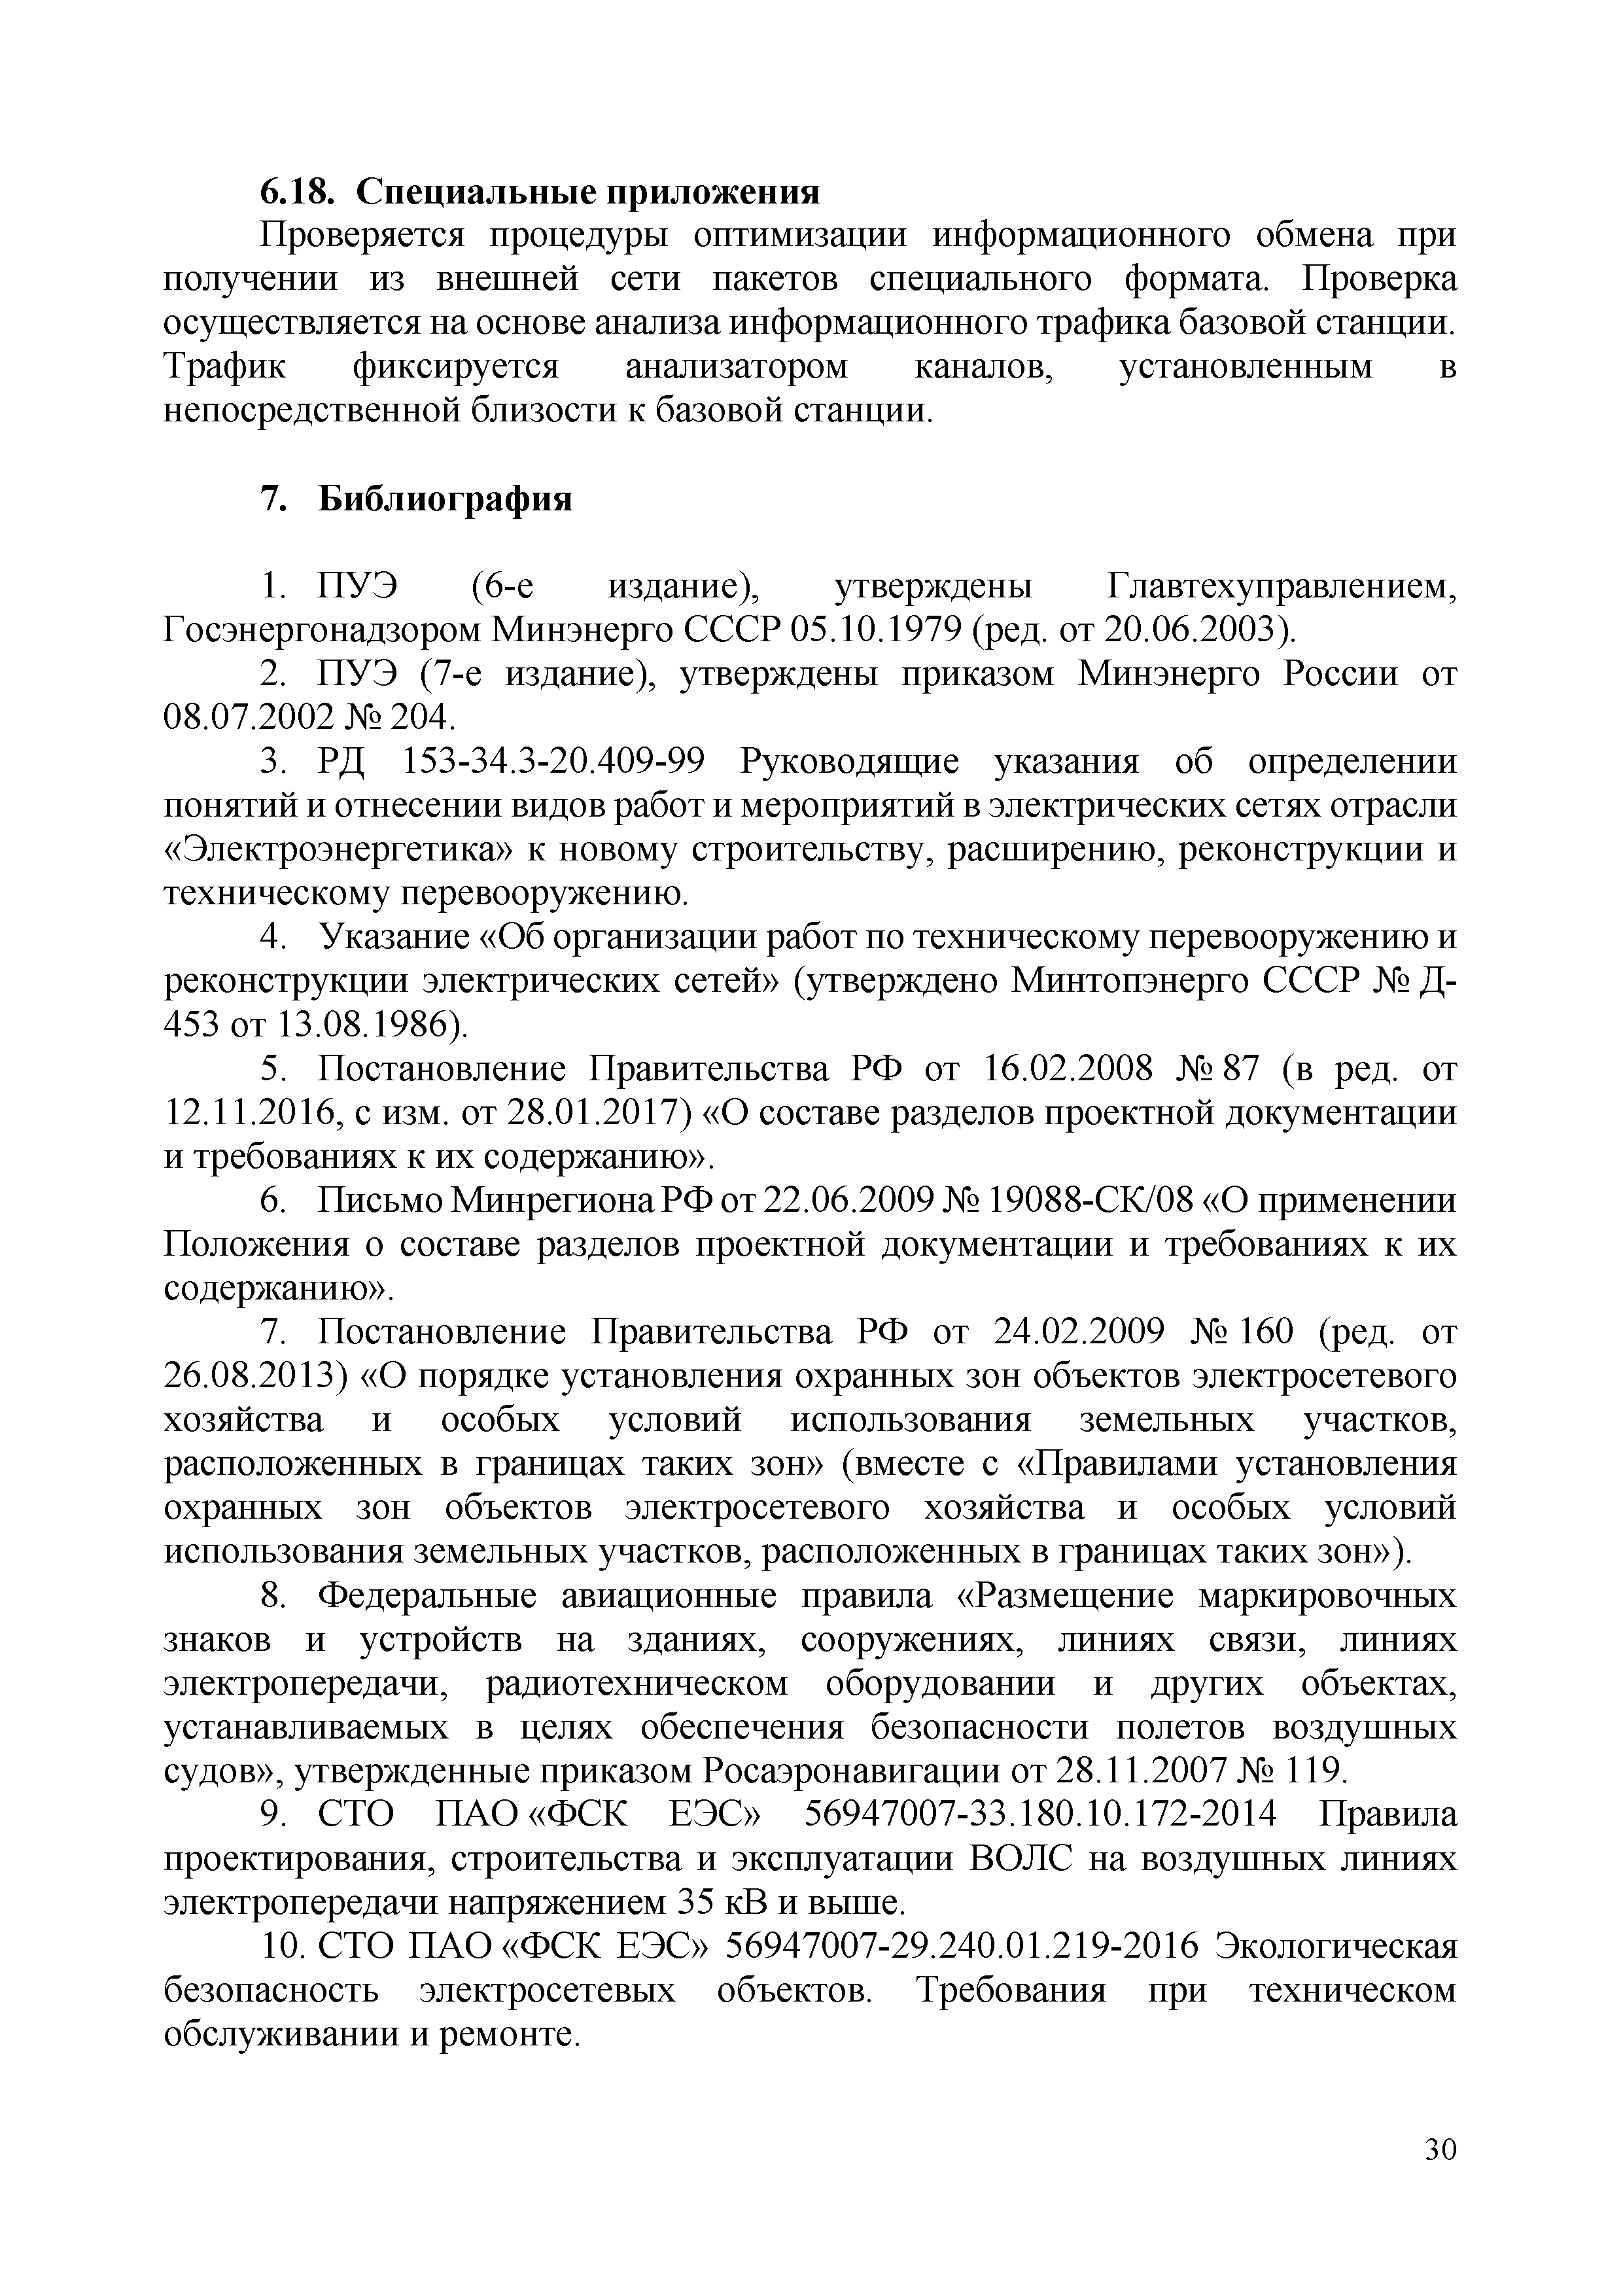 СТО 34.01-9.1-002-2018